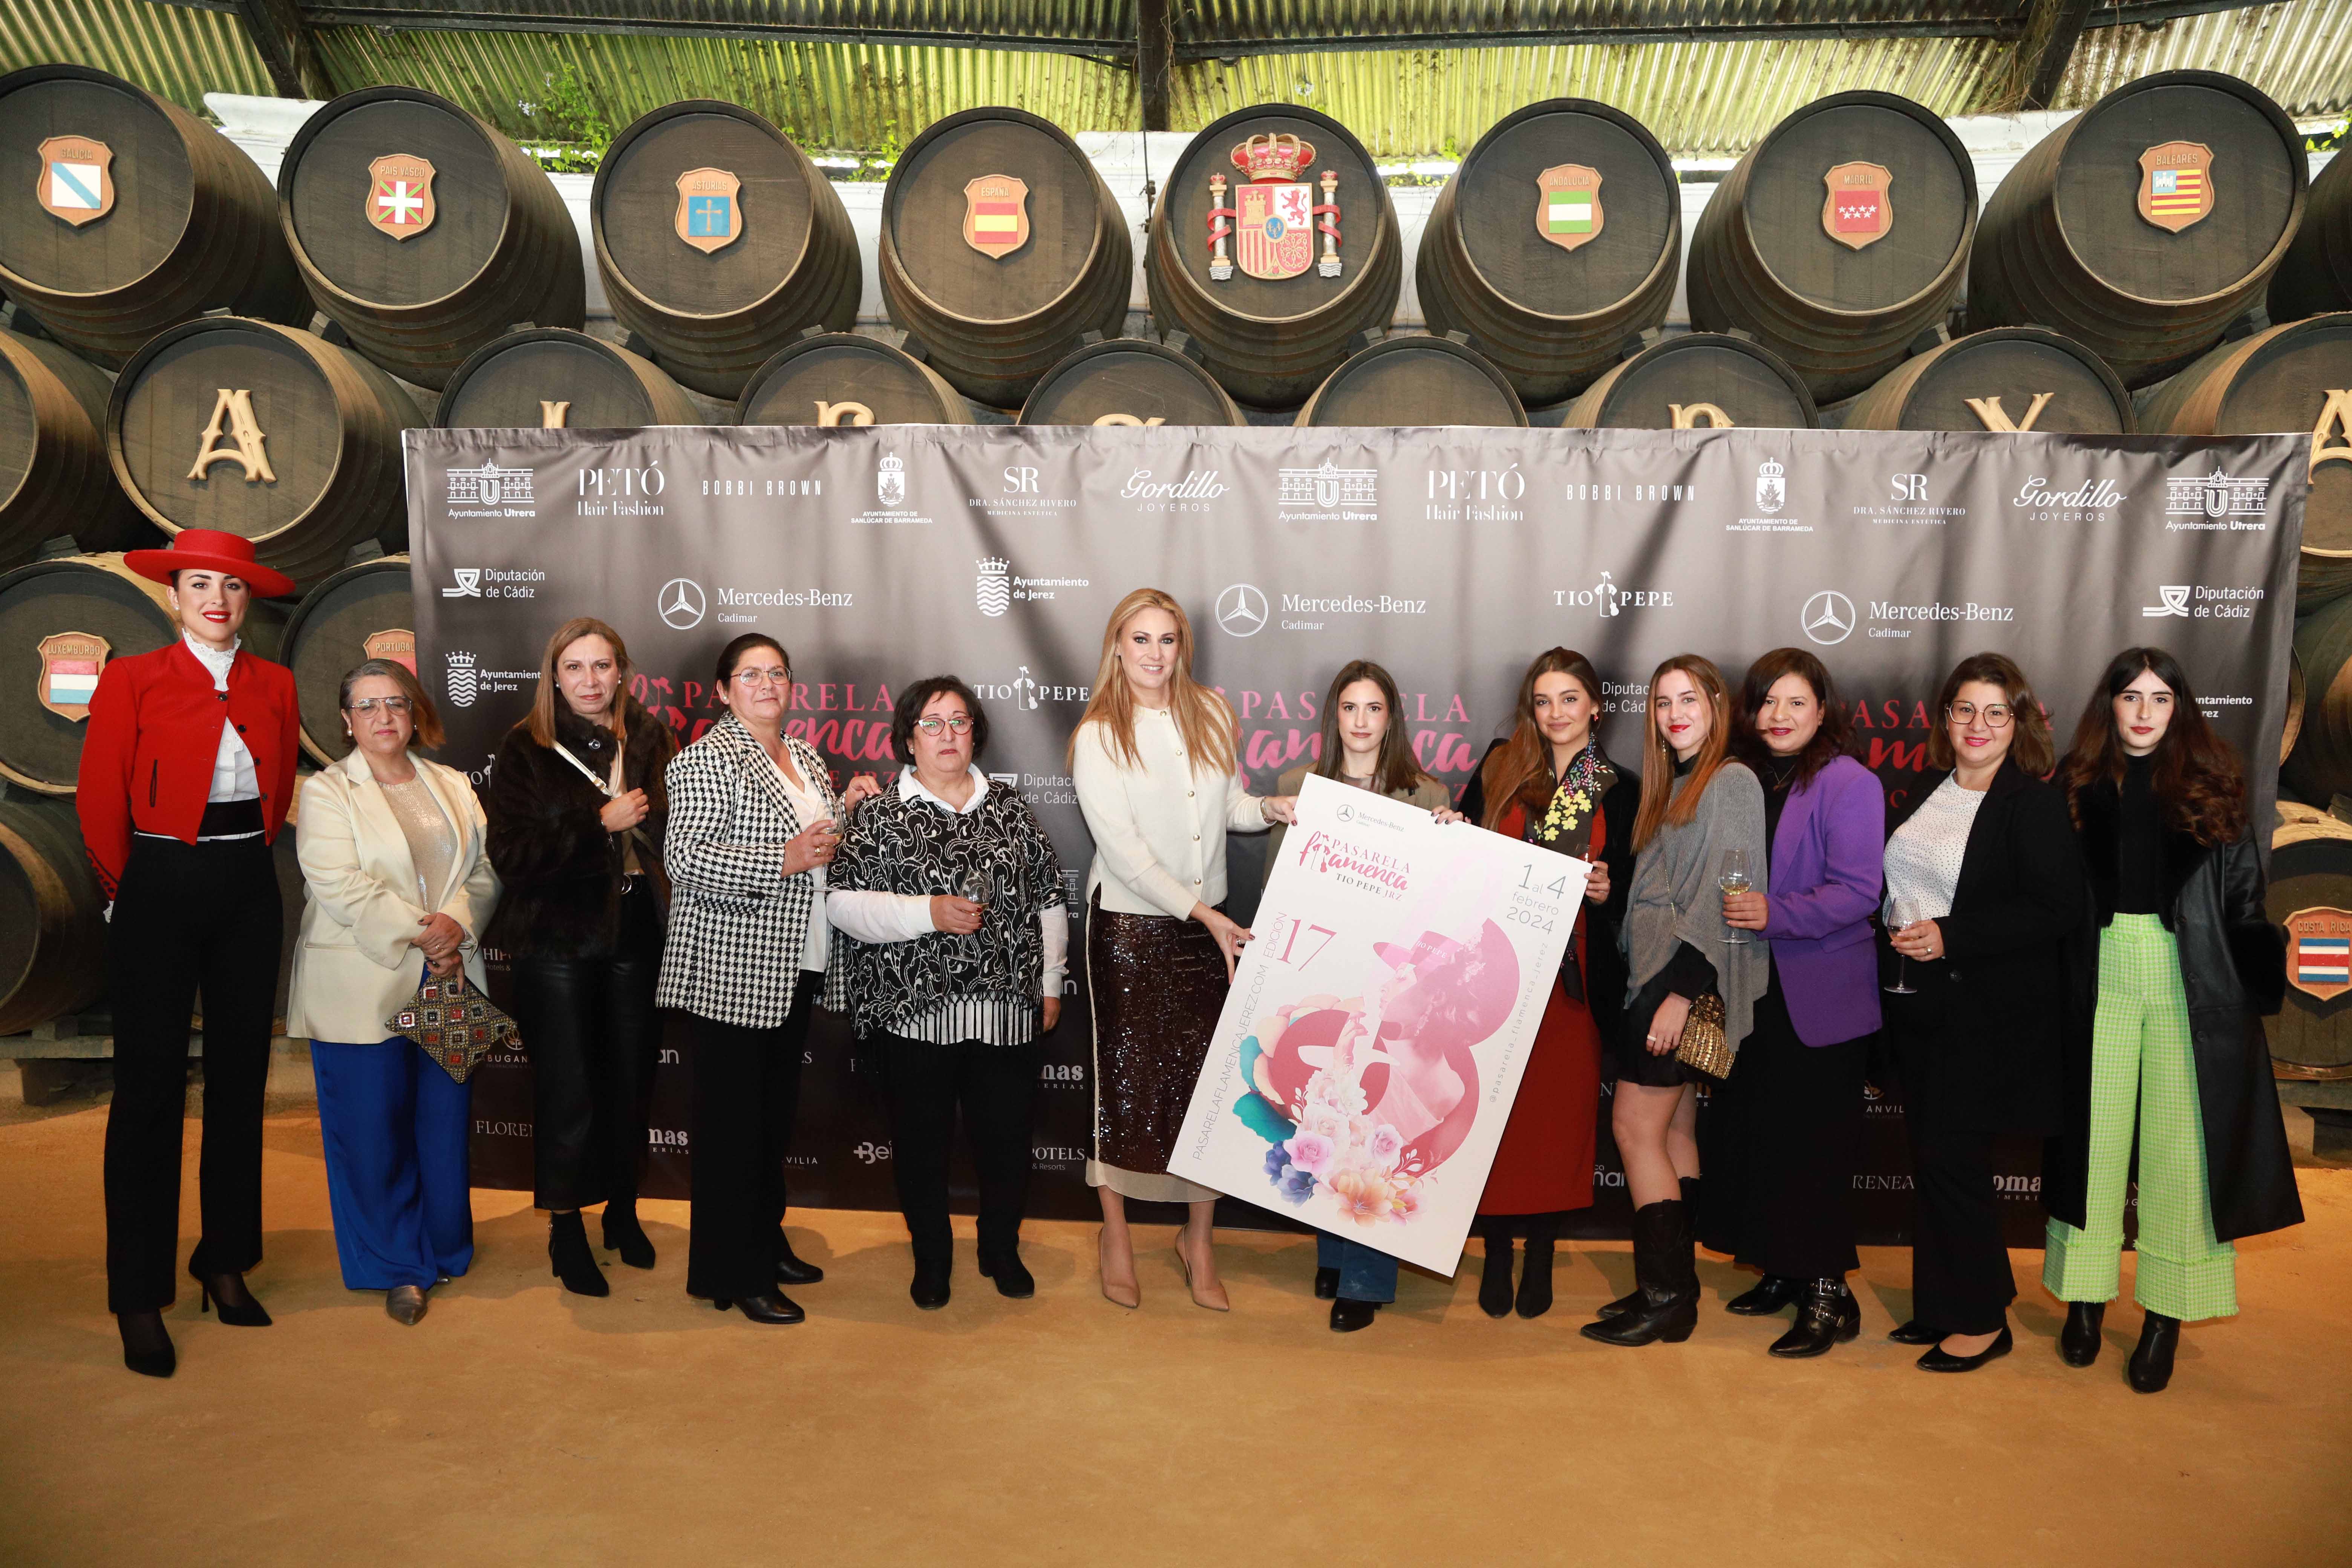 La directora junto a algunas de las diseñadoras participantes, mostrando el cartel de la Pasarela Flamenca.